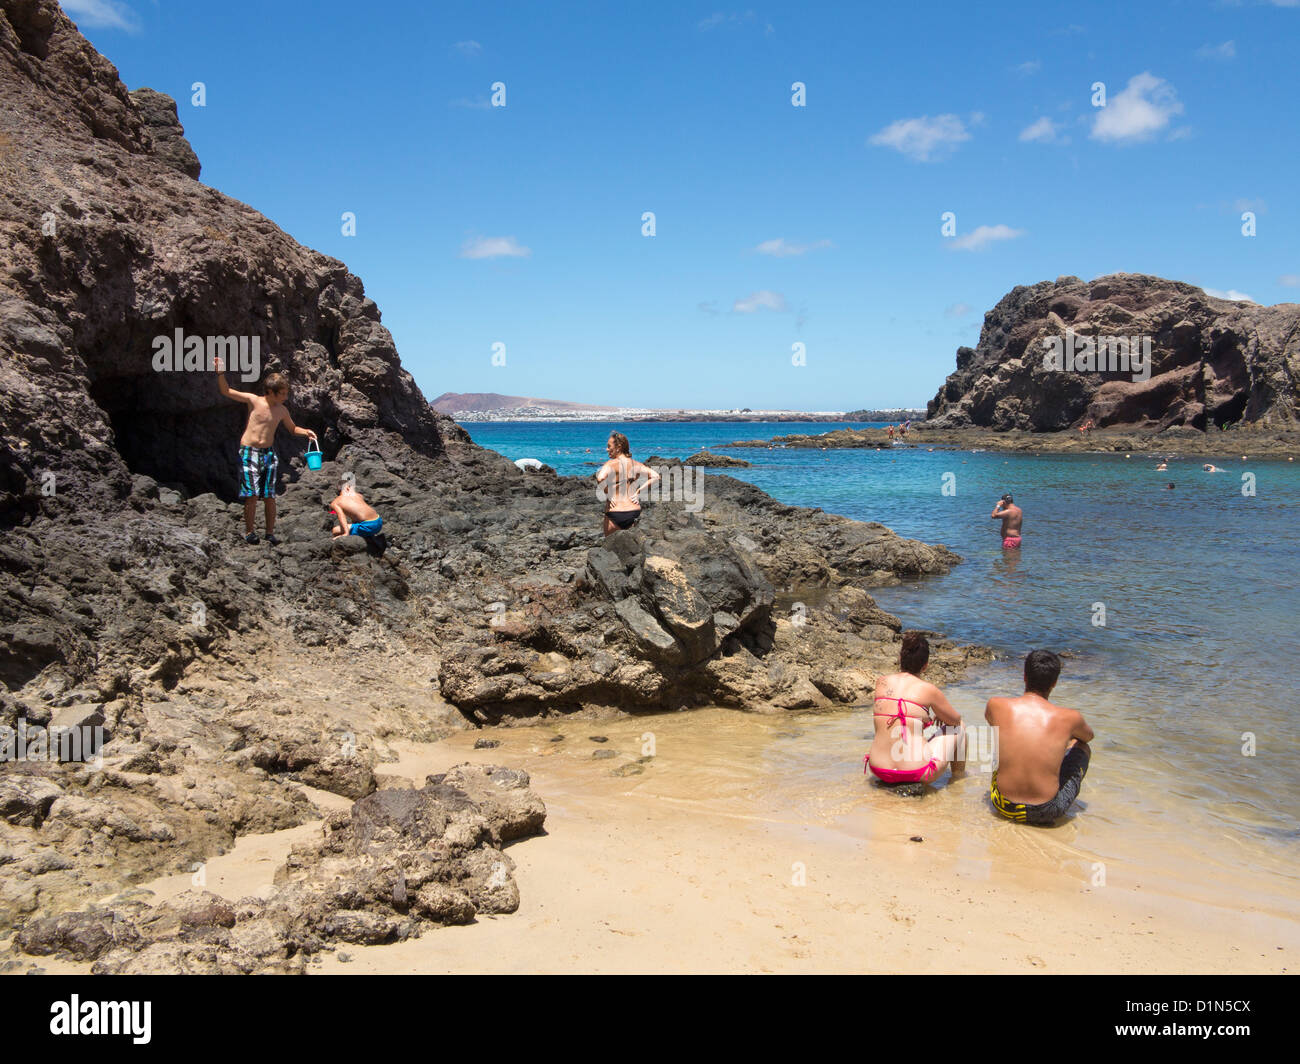 Playa de Papagayo beach près de Playa Blanca, Lanzarote, Îles Canaries Banque D'Images